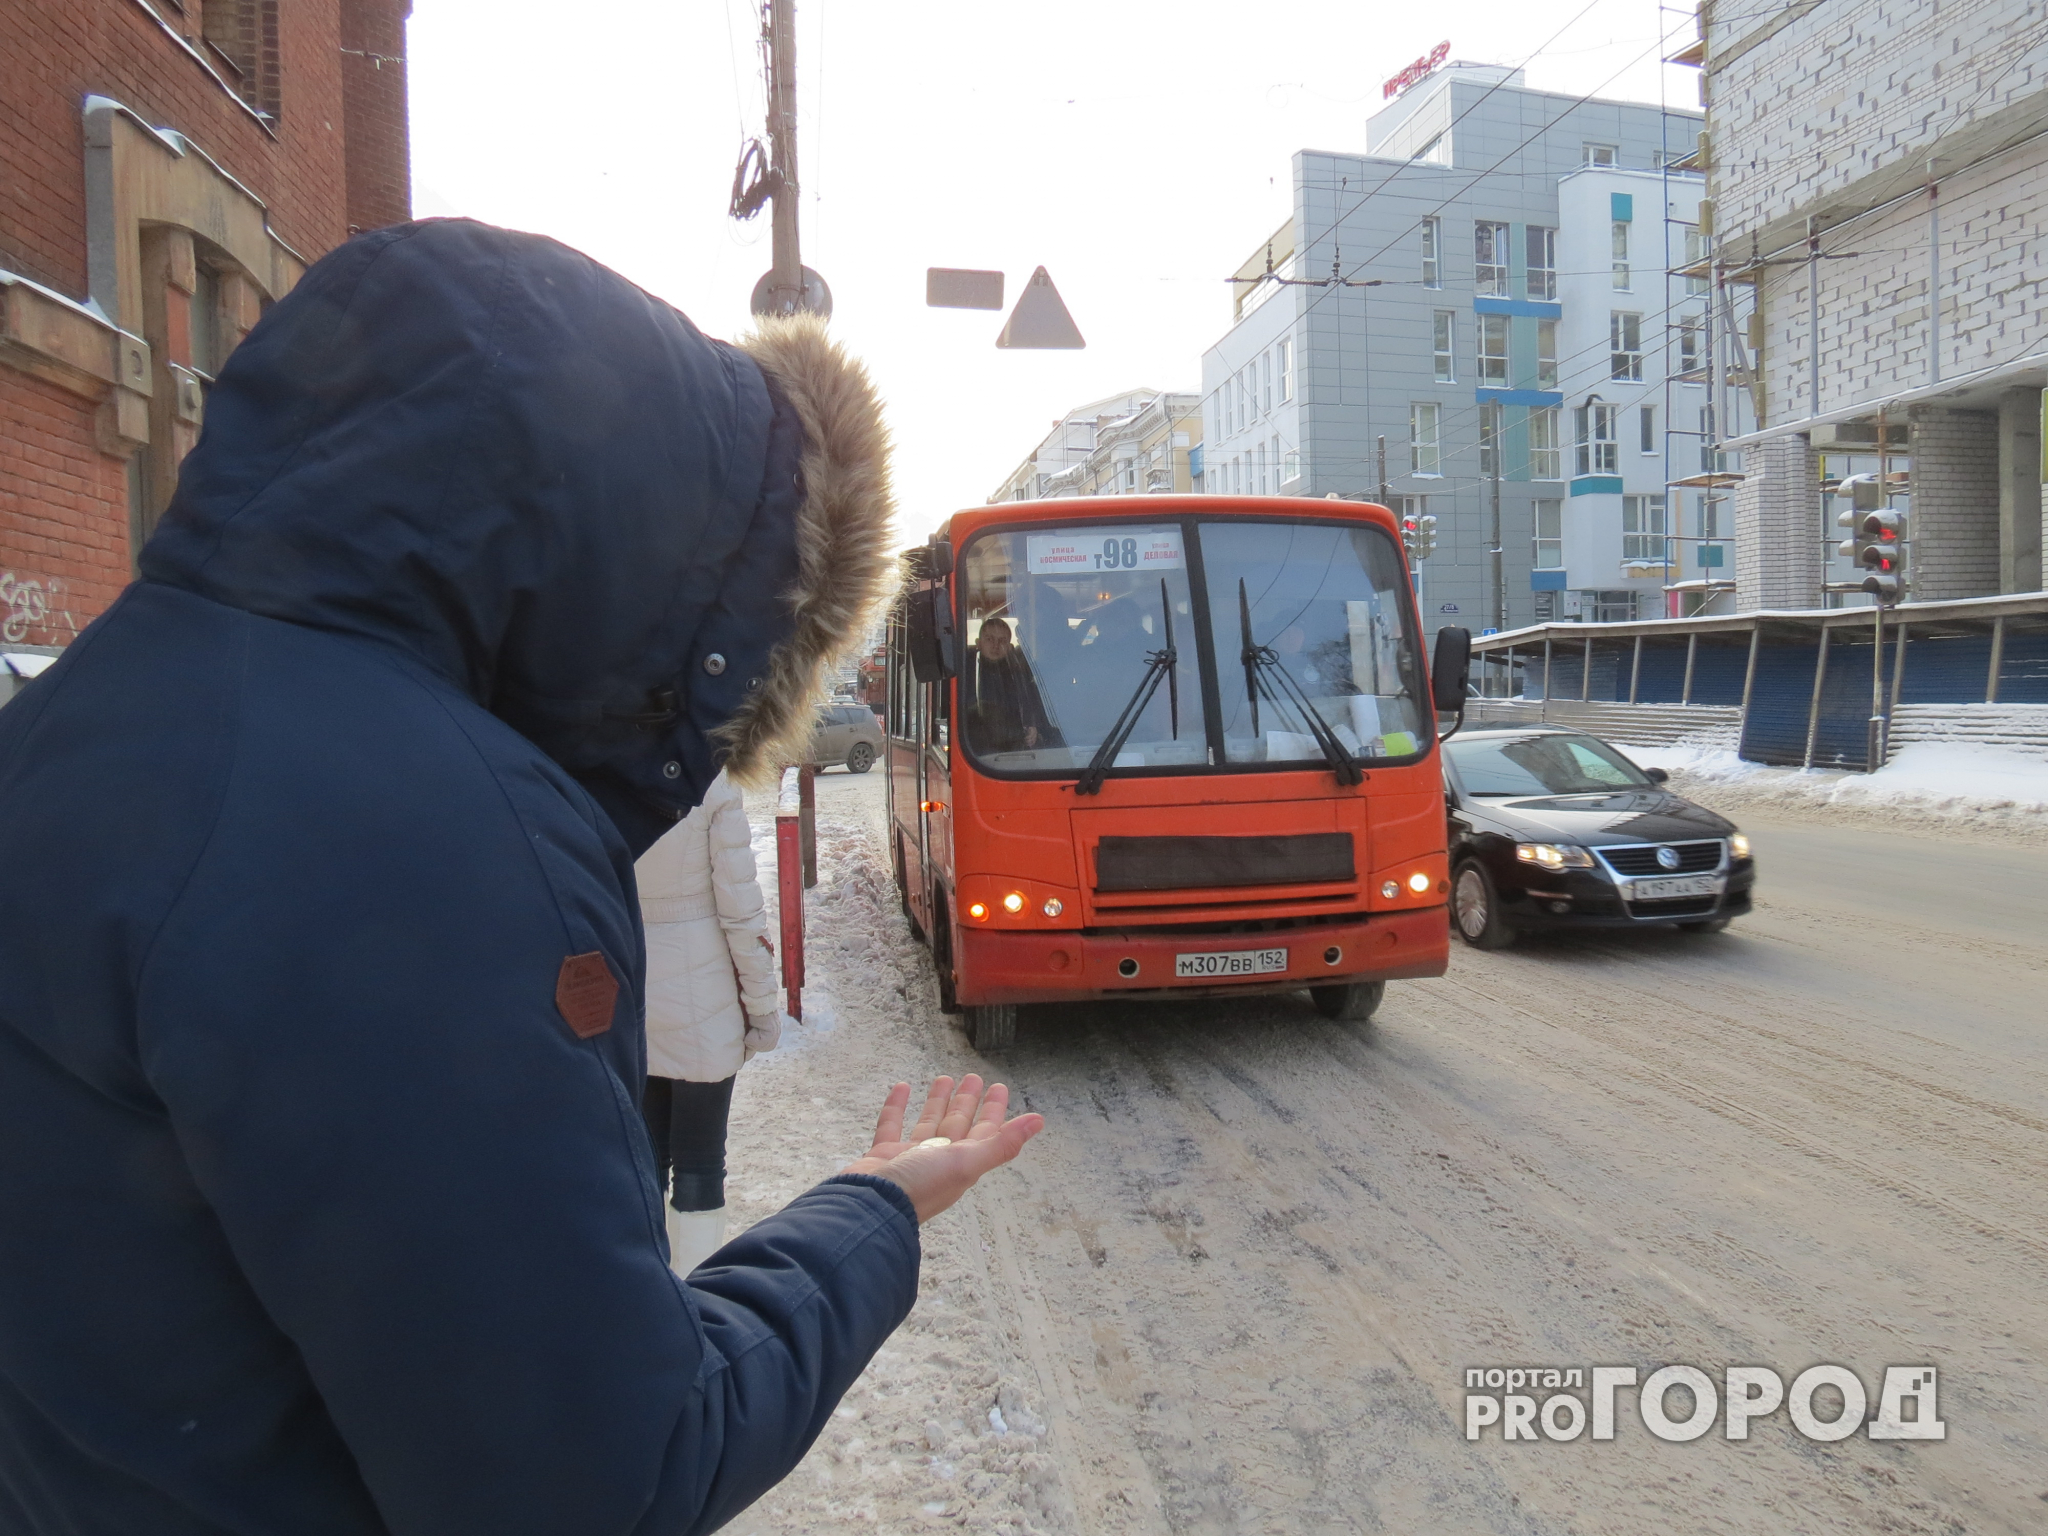 В Нижнем Новгороде транспортные карты из-за технического сбоя вышли из строя